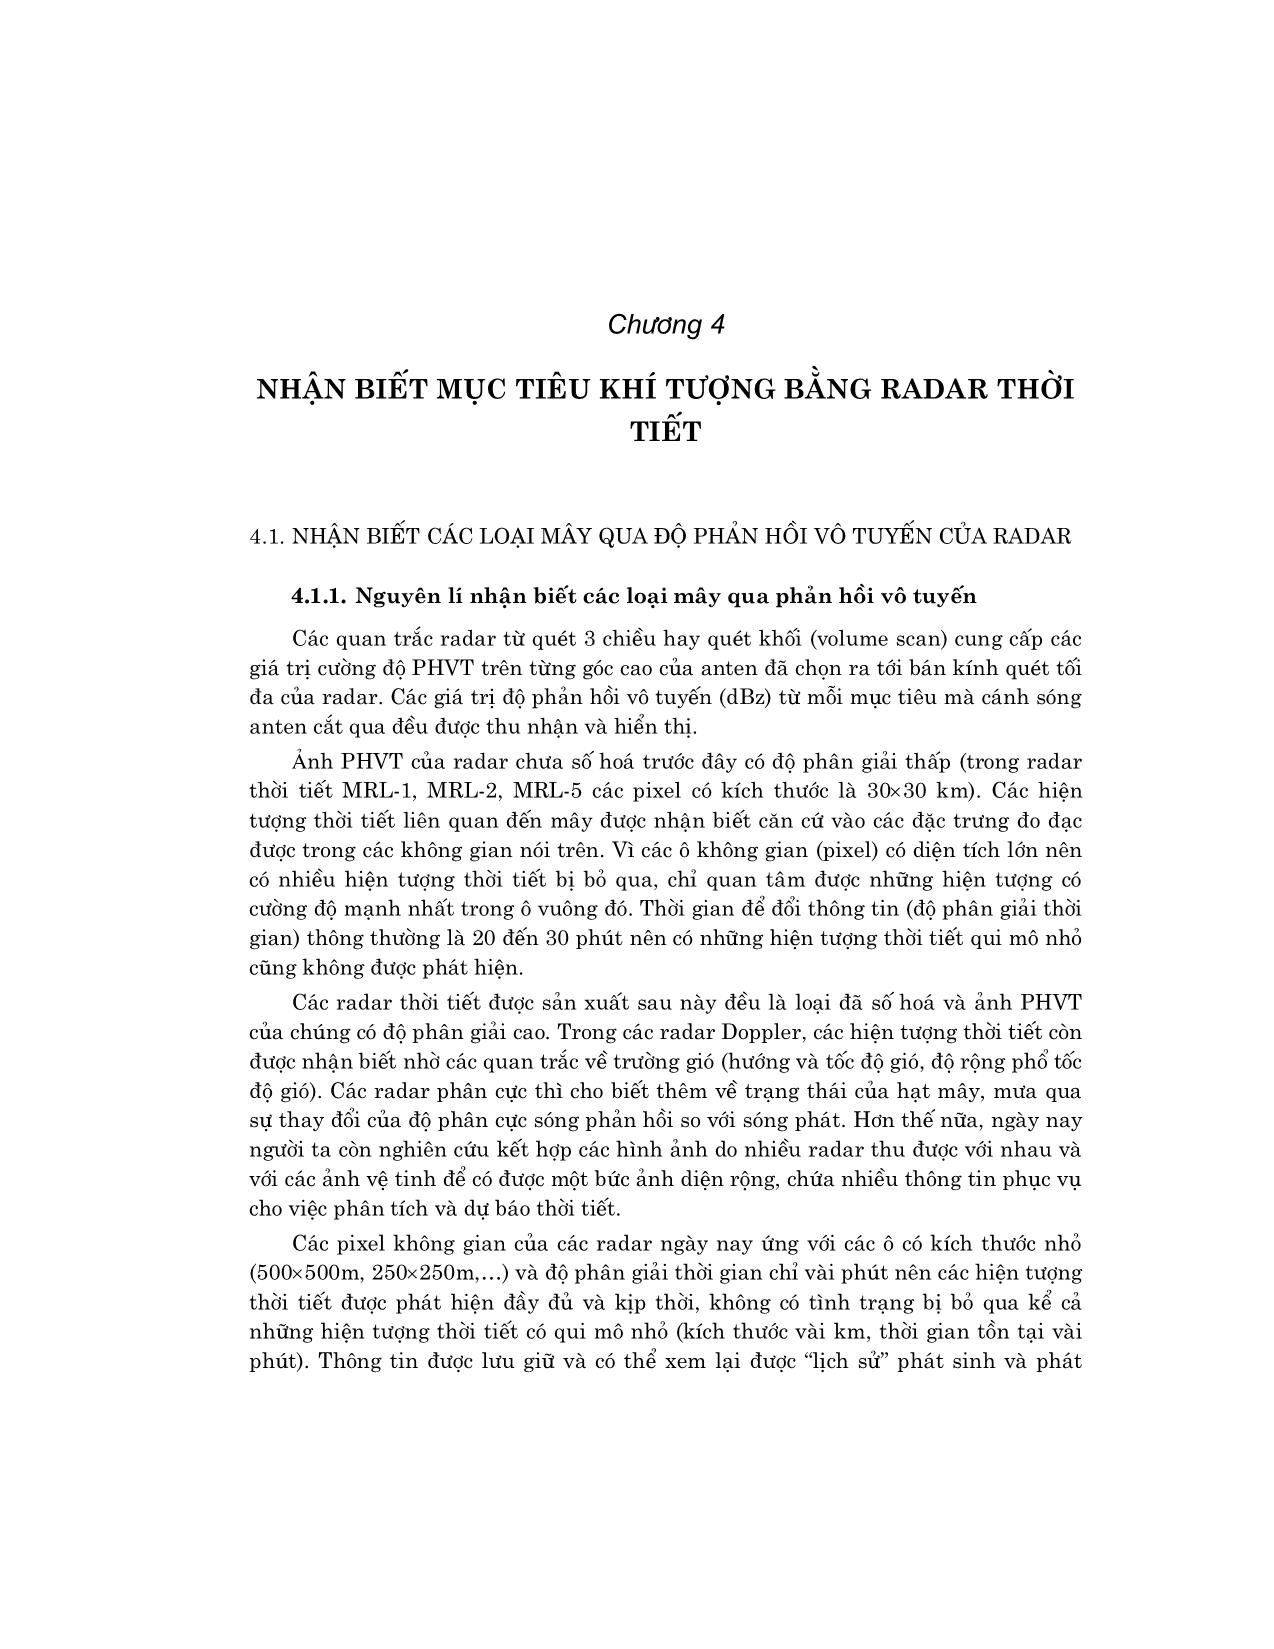 Giáo trình Khí tượng Radar (Phần 2) trang 1